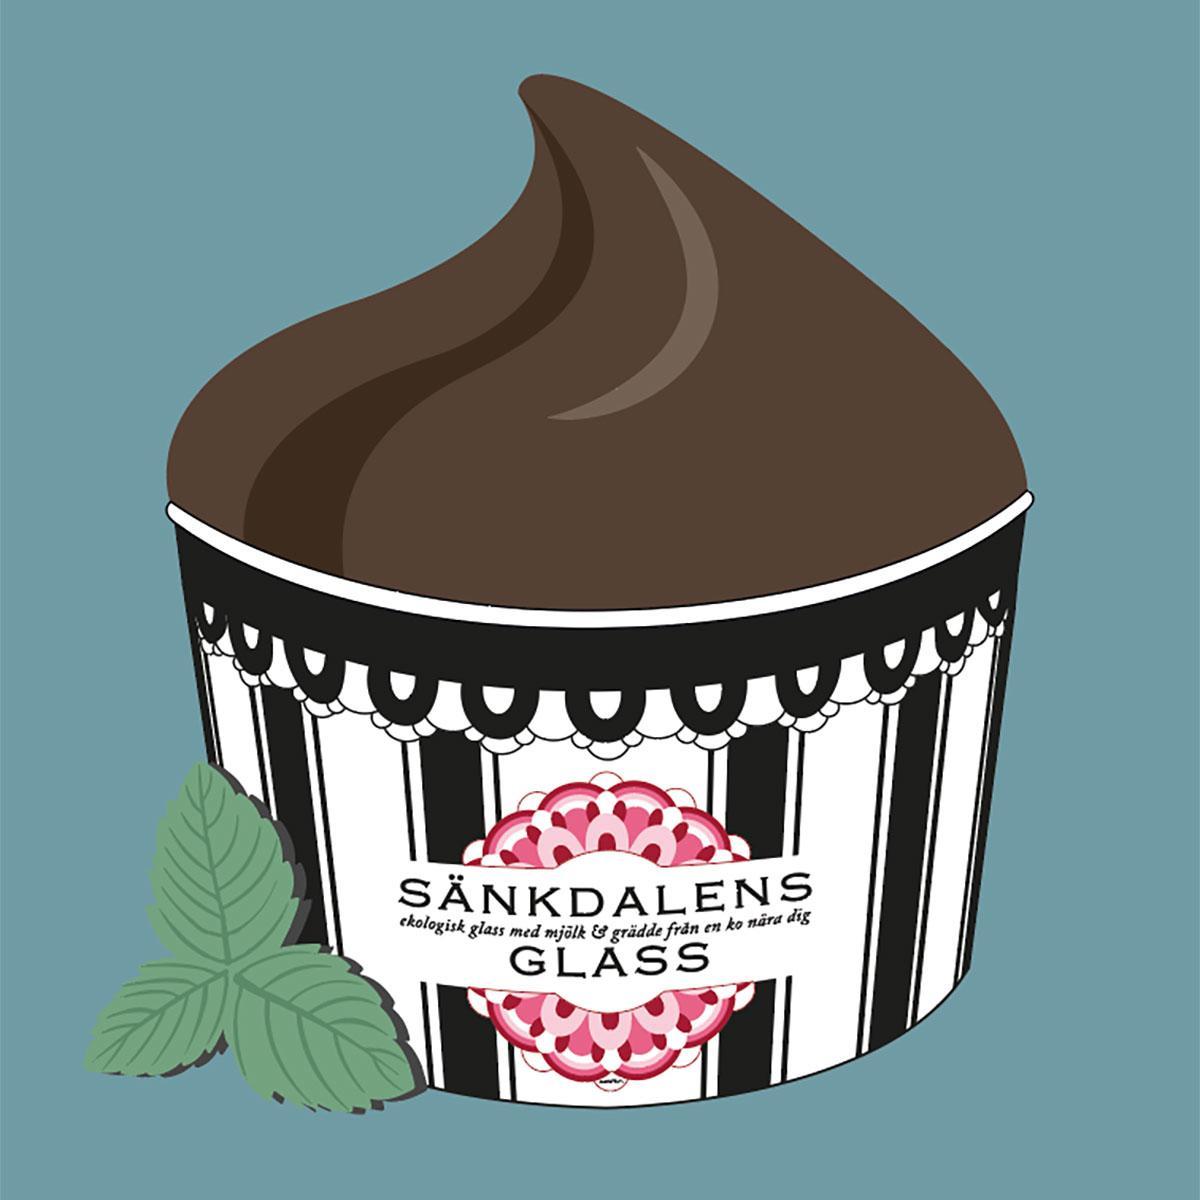 Sänkdalens glass's Minz-Schokoladen-Eis'